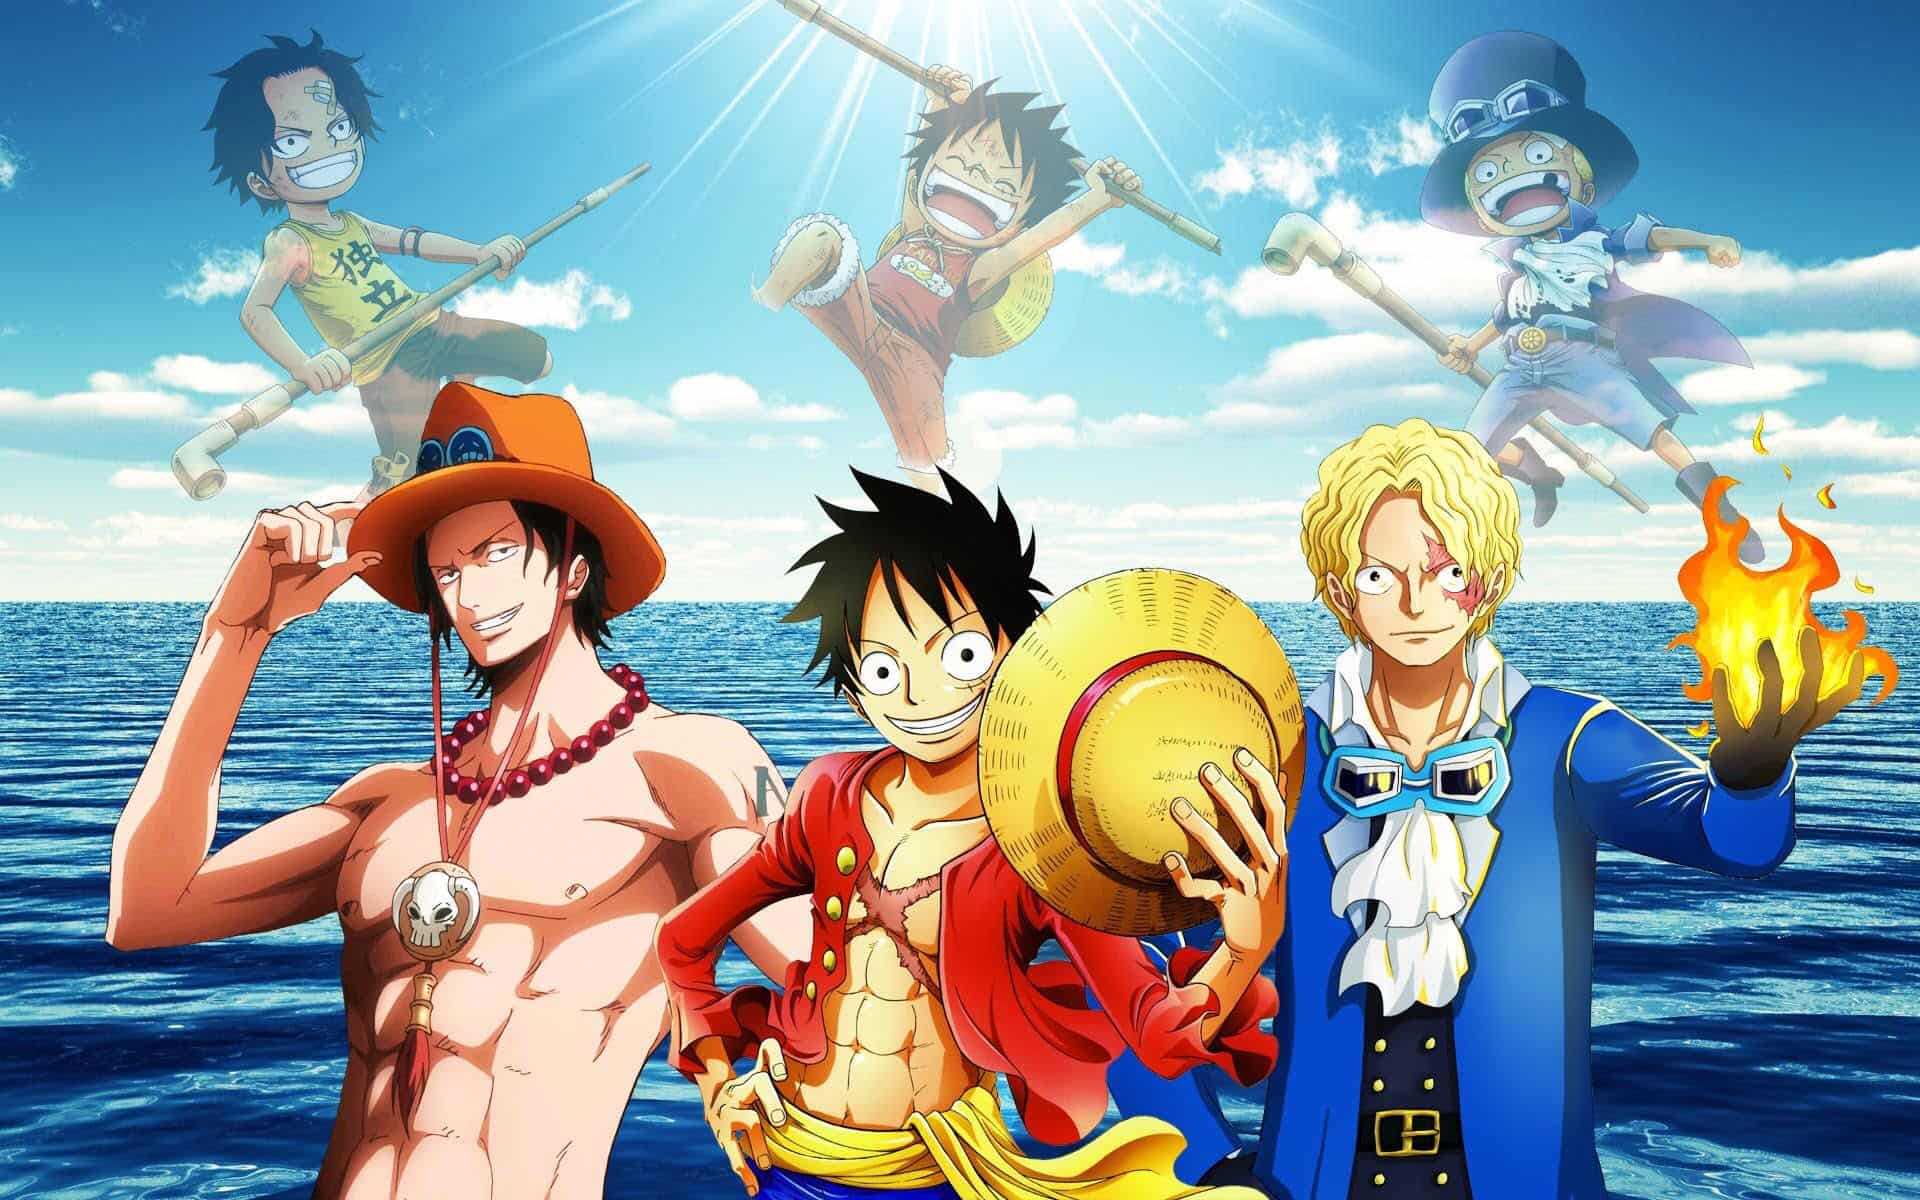 Super schönes One Piece Bild